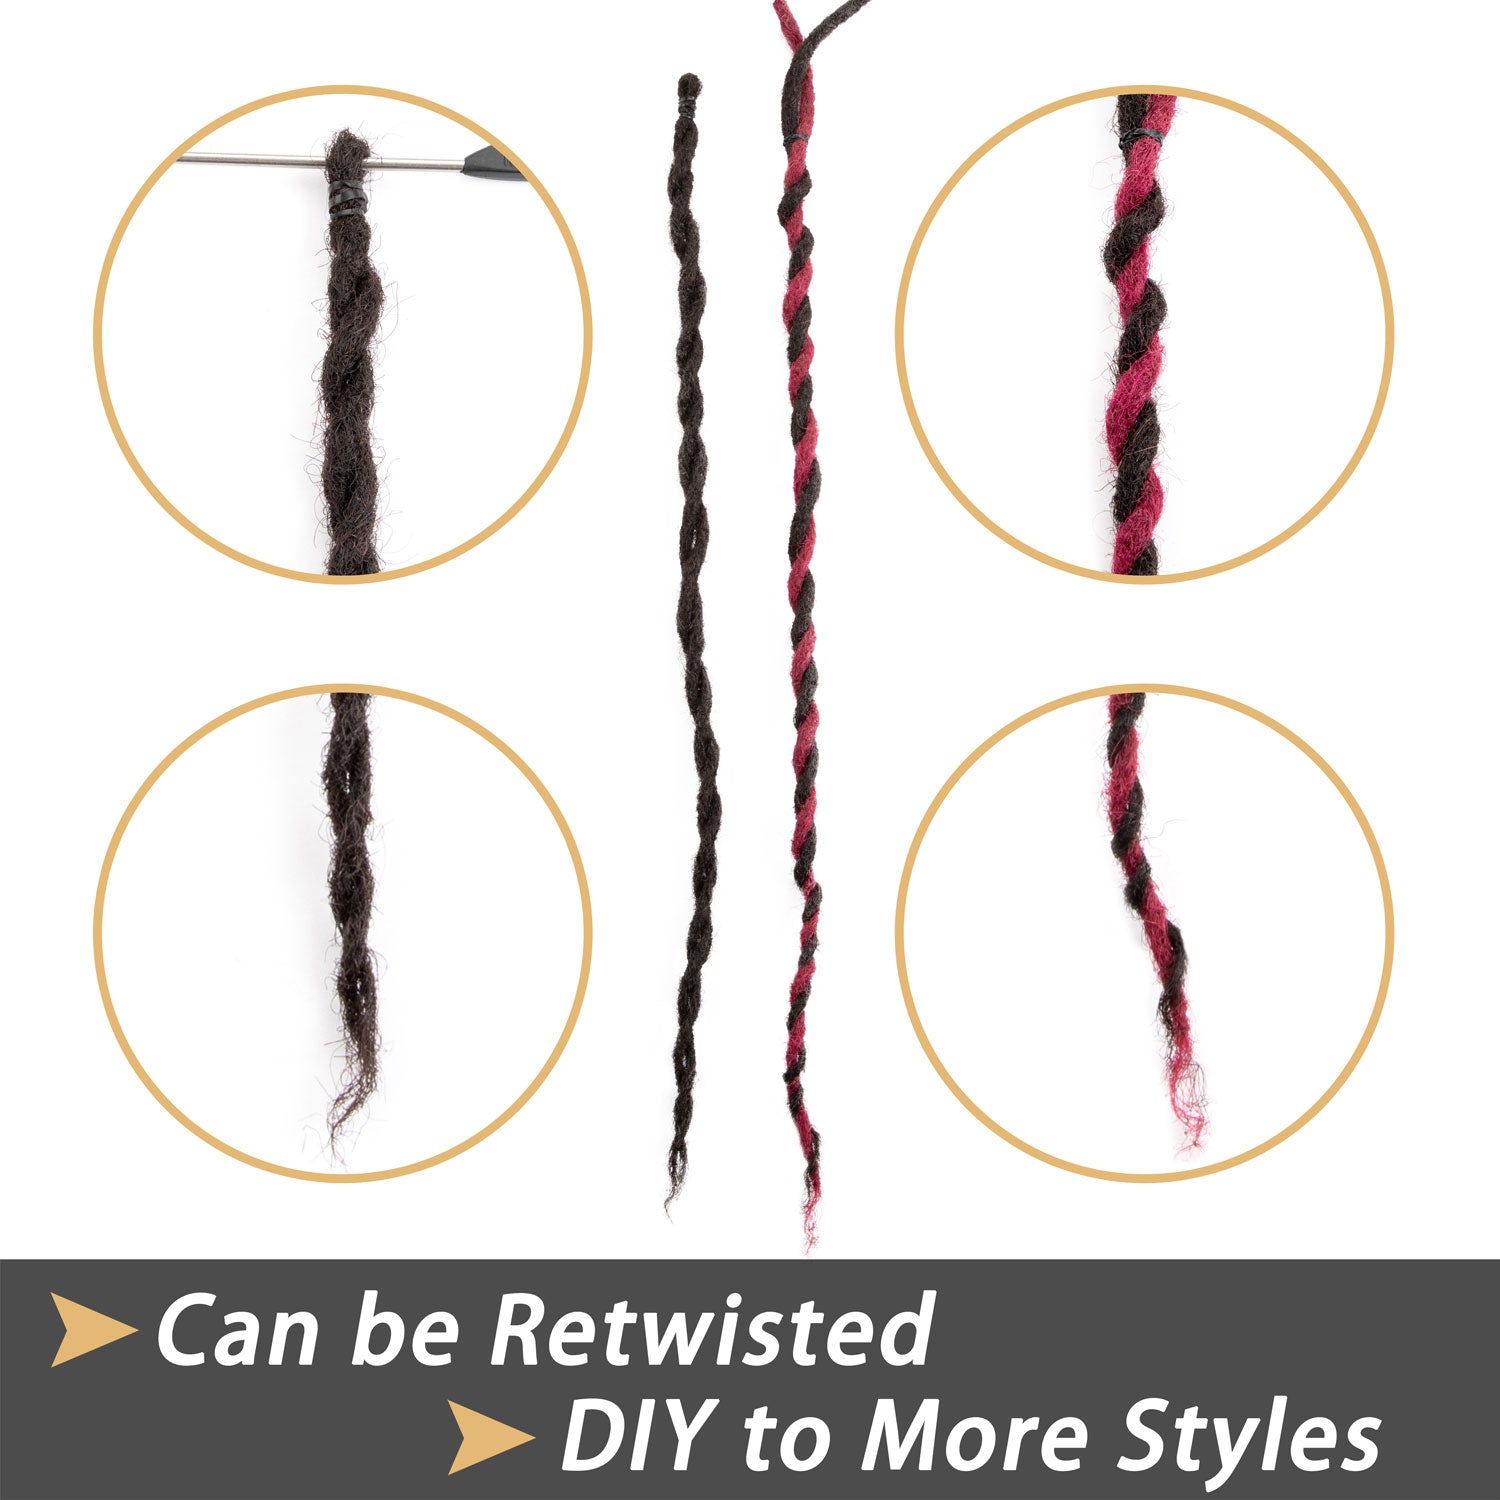 Dreadlocks Extensions Cheveux Humains Permanent Dreads Locs Extensions de Cheveux pour Retwist et Braid Couleur Naturelle 0.4cm Mince (6-12 Pouces)